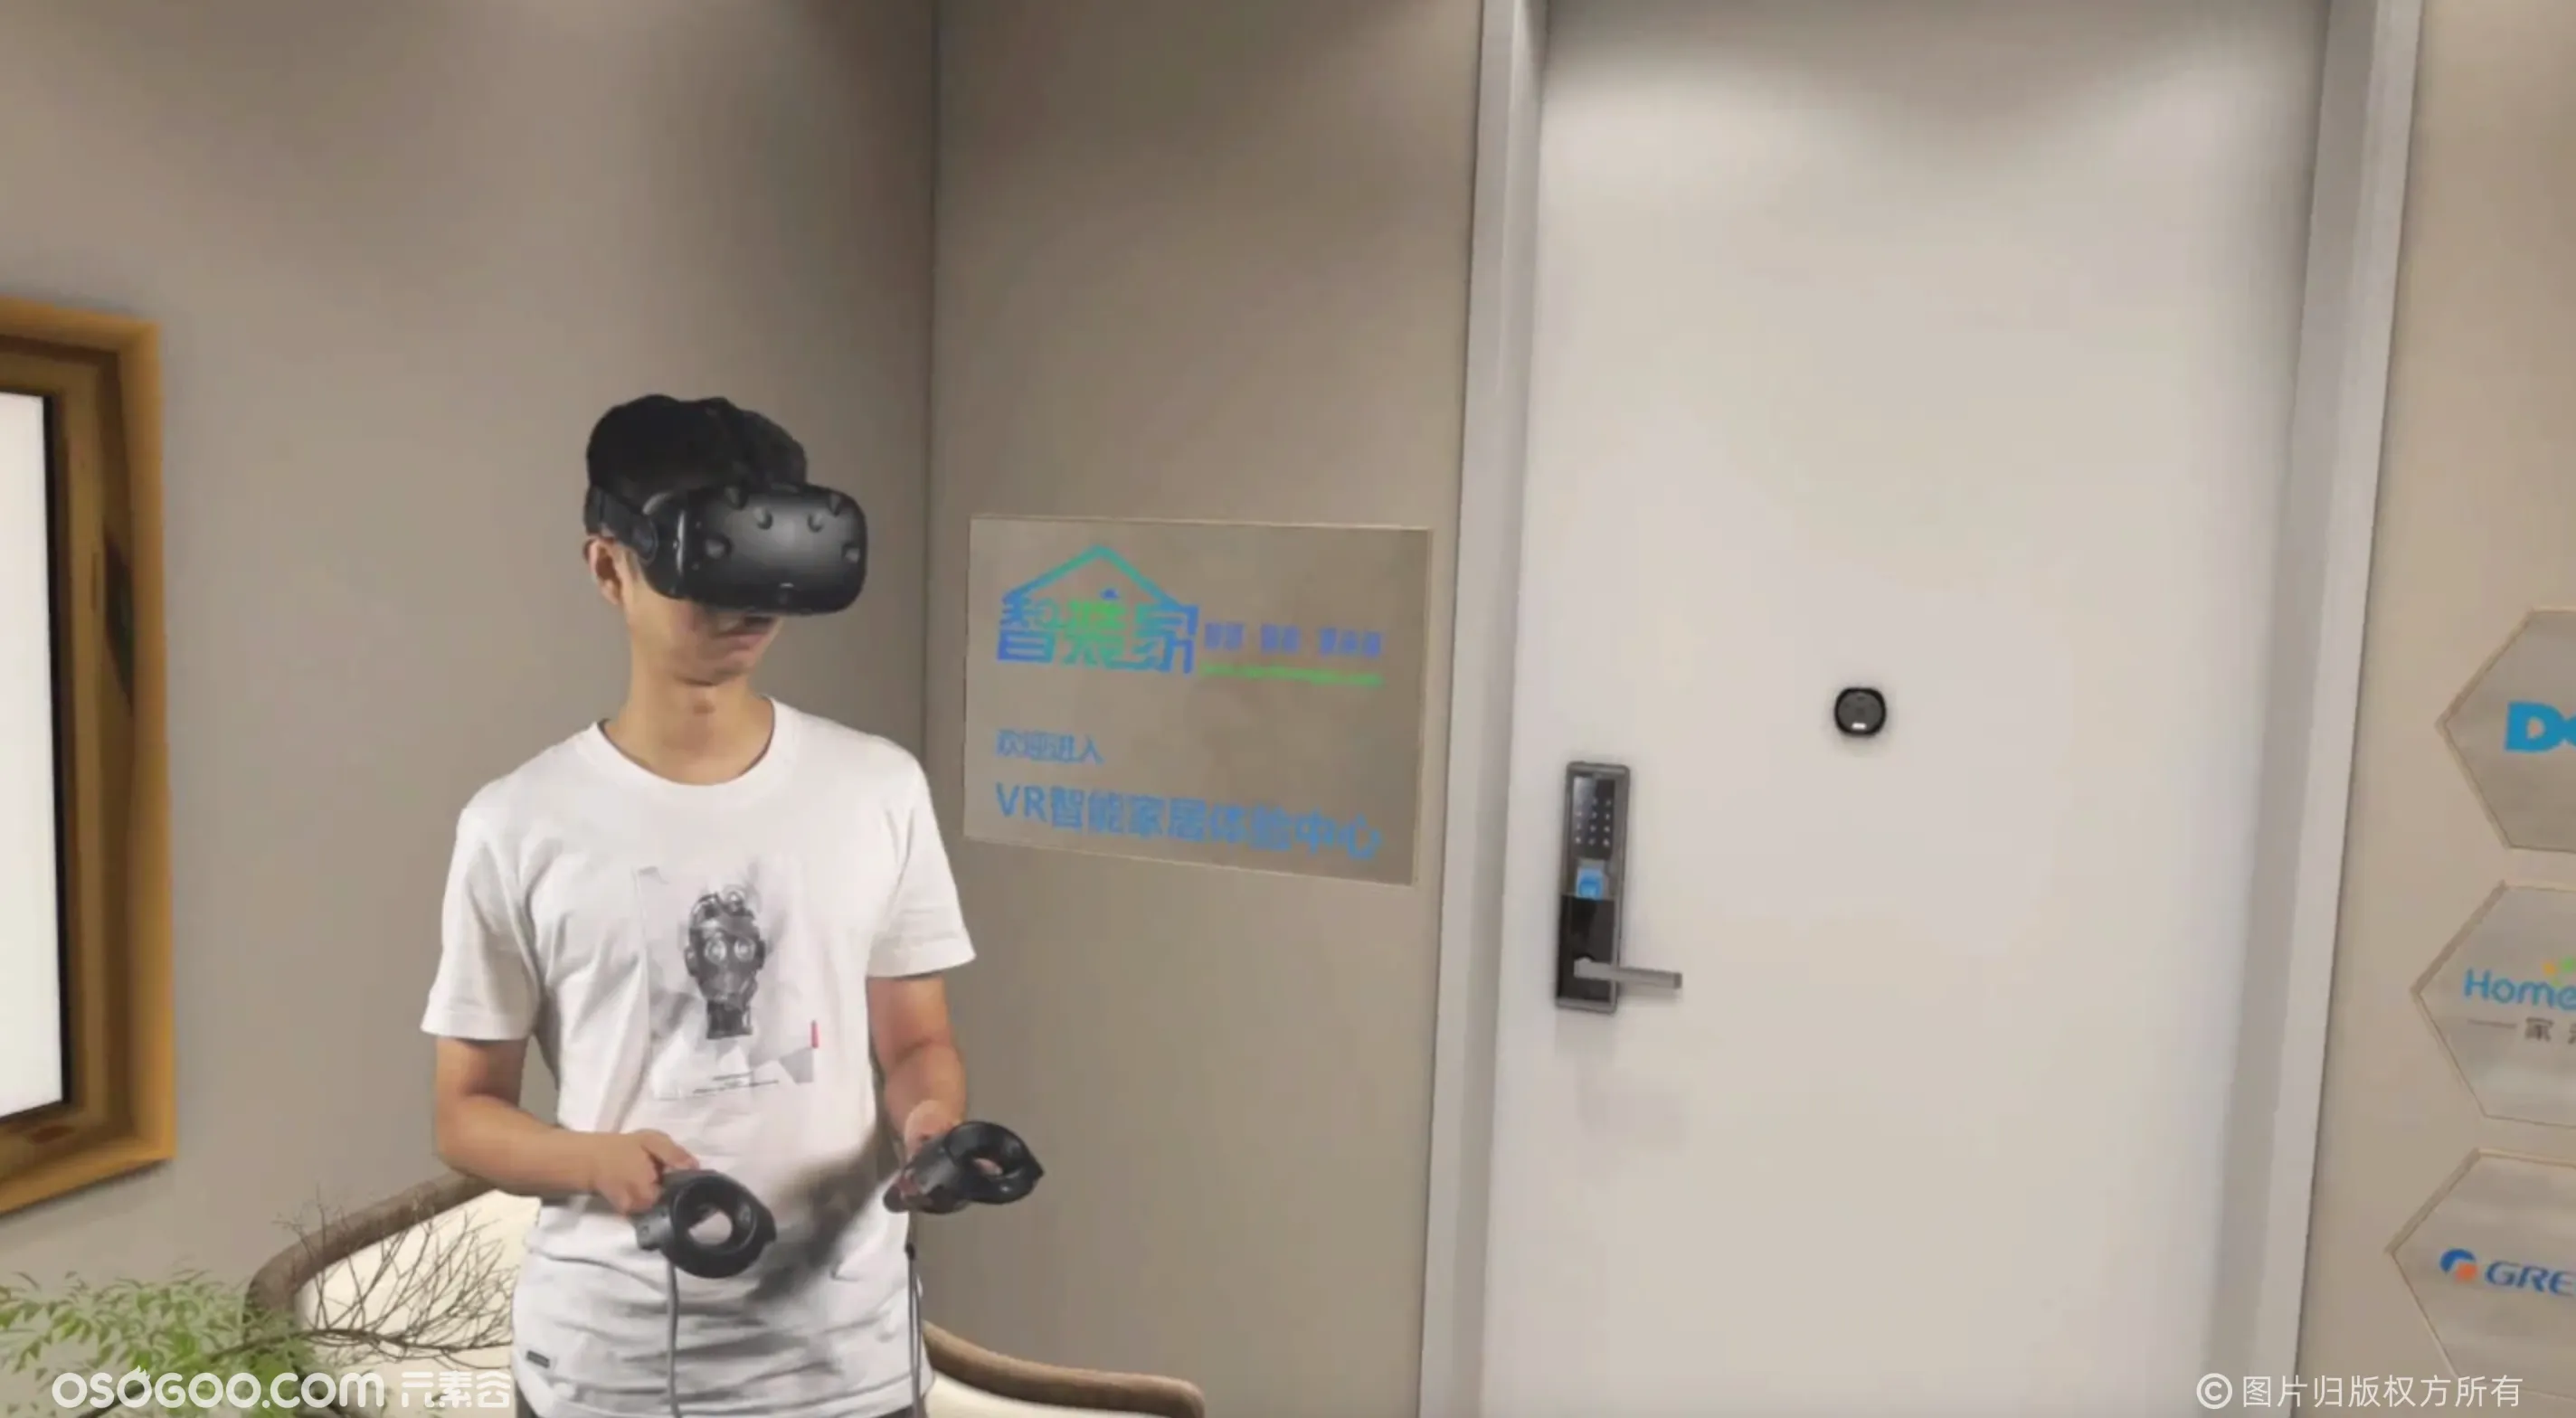 VR虚拟现实-全场景空间体验